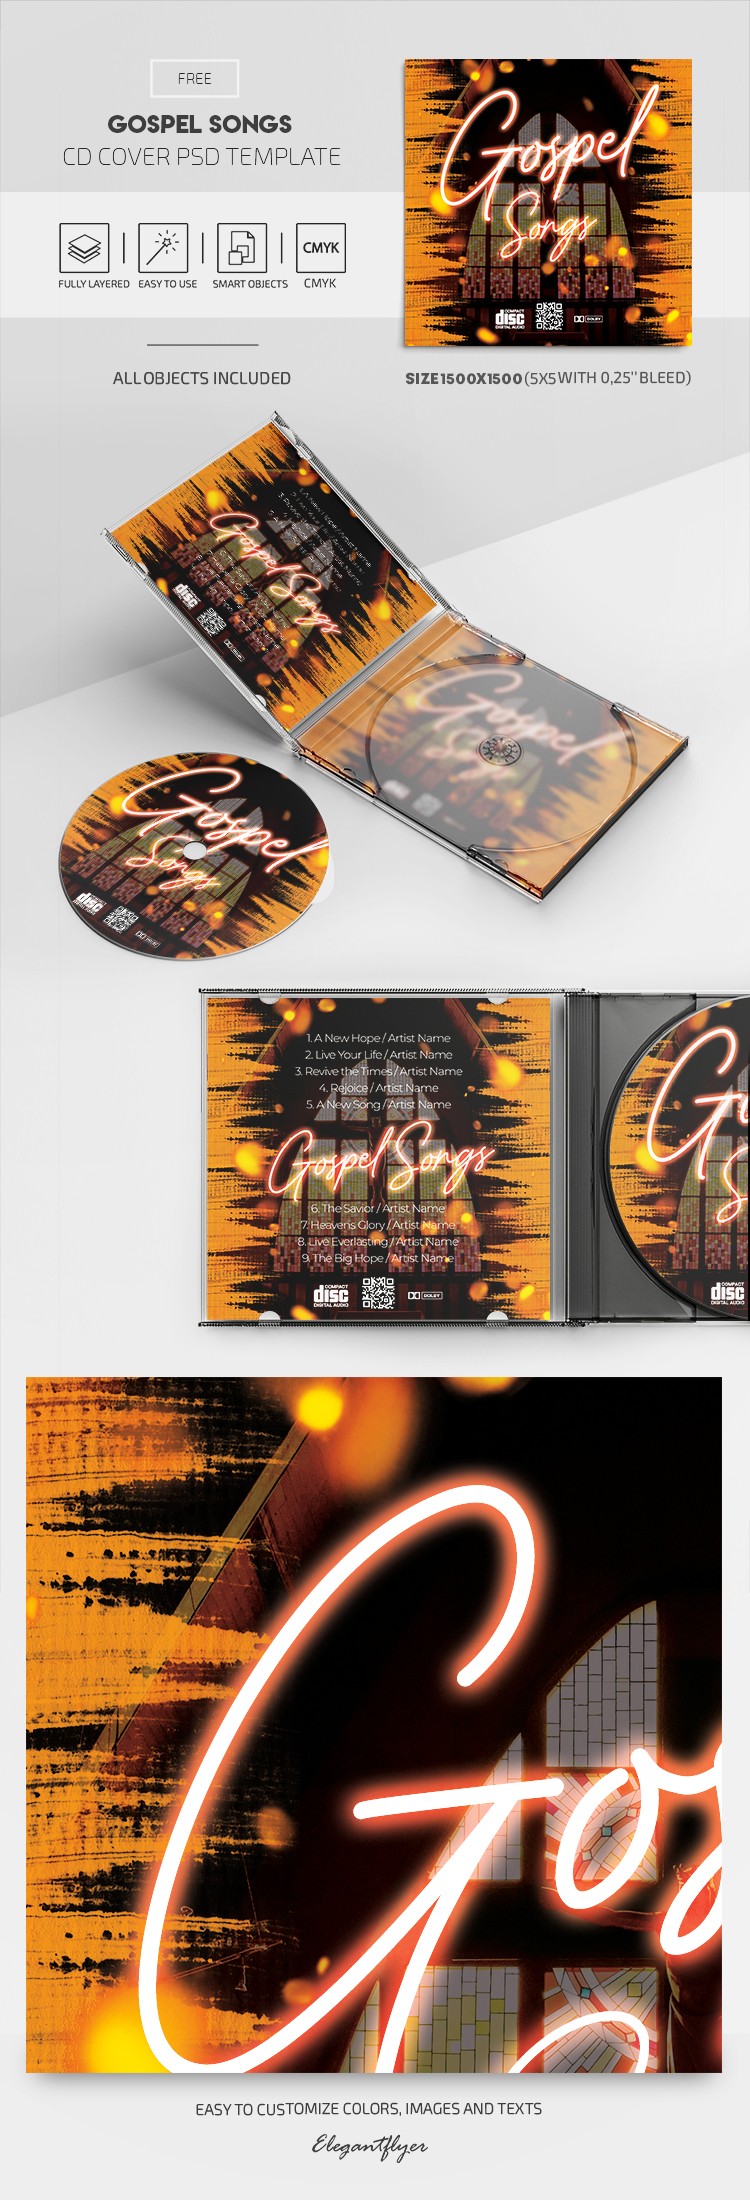 Copertina del CD di canzoni gospel by ElegantFlyer